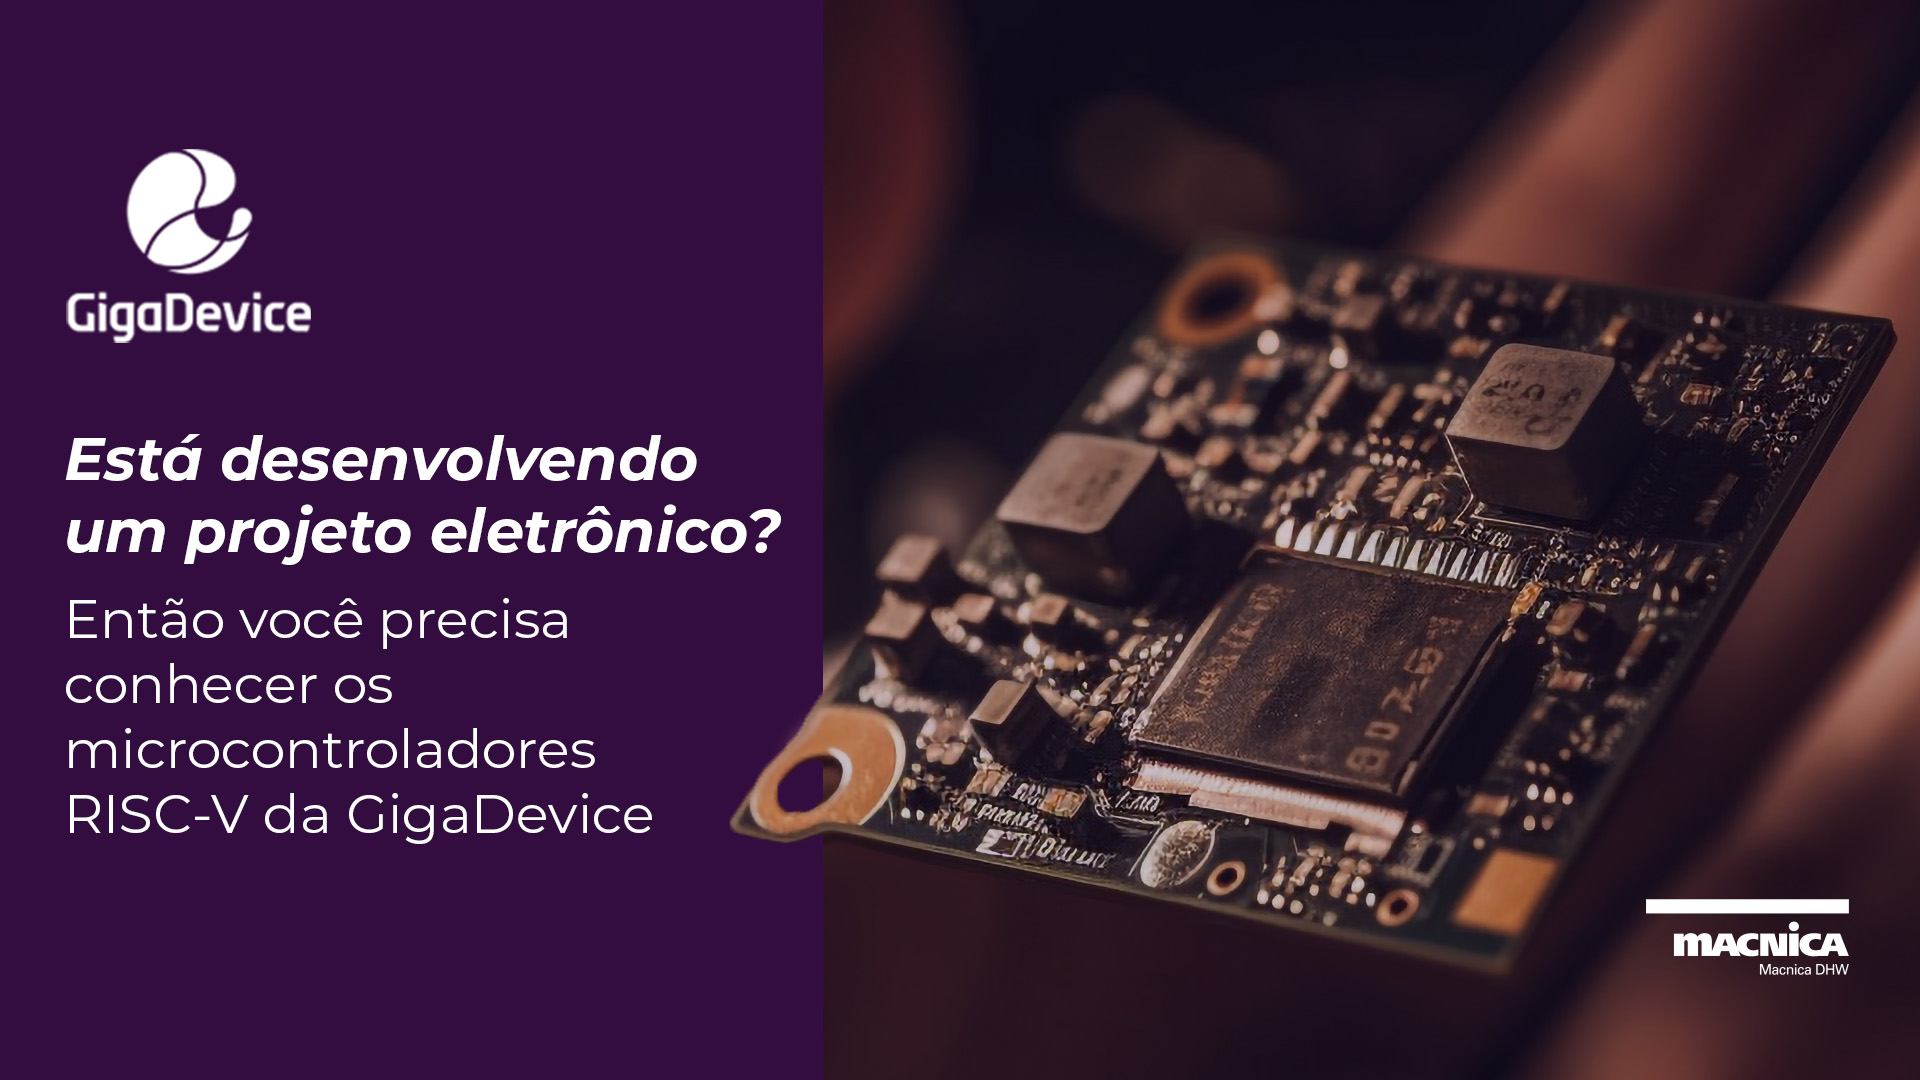 Conheça o microcontrolador RISC-V ideal para o seu projeto eletrônico